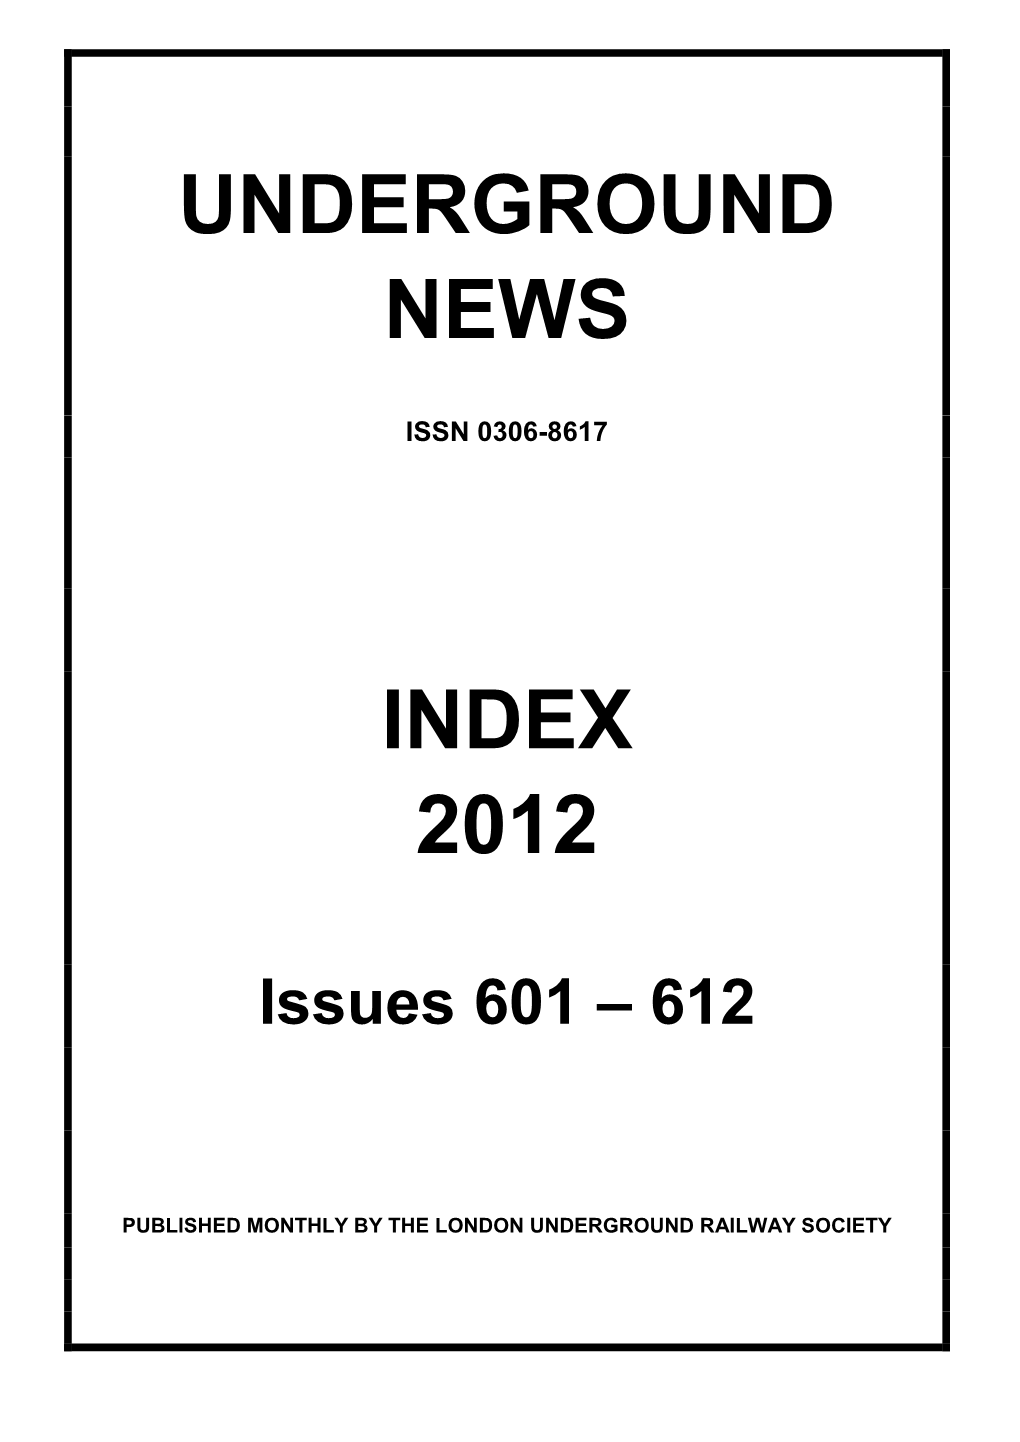 Underground News Index 2012